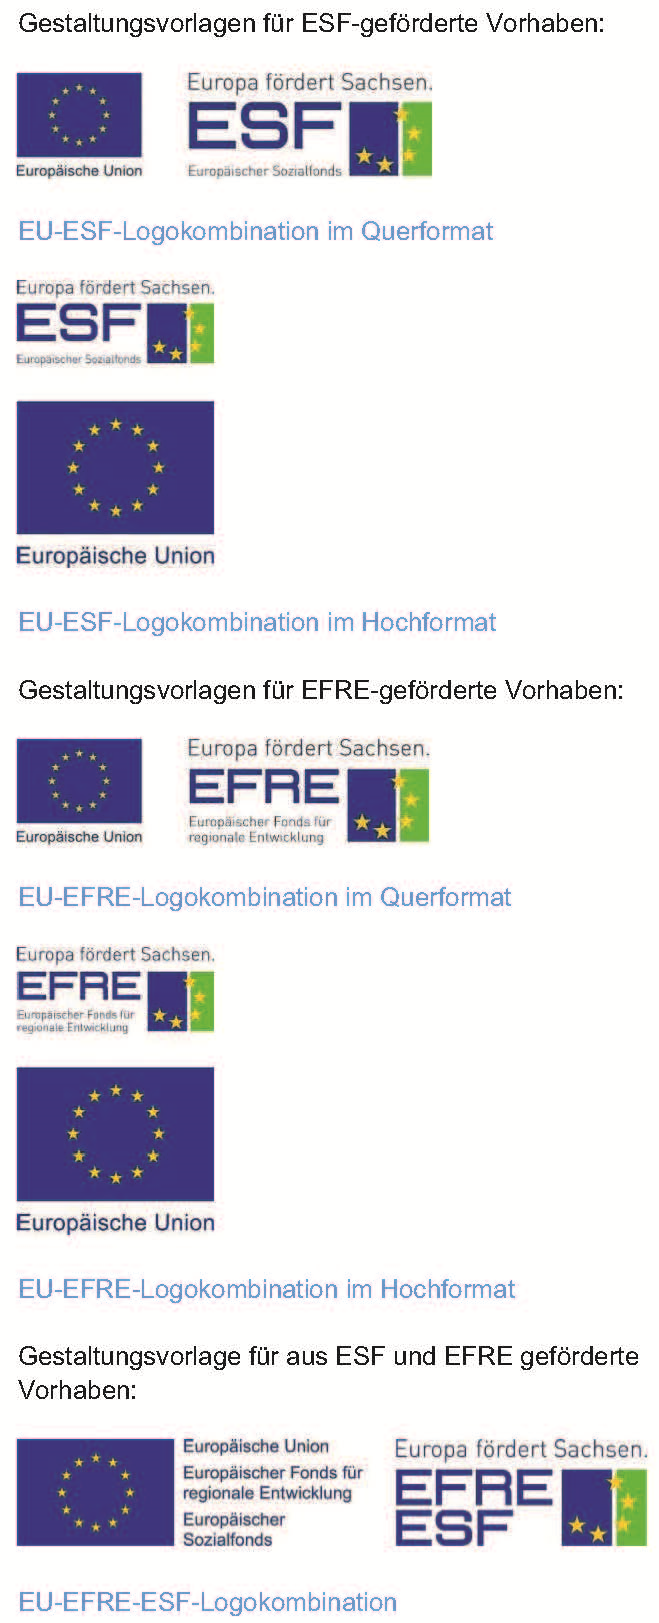 Bild 1 Gestaltungsvorlagen für EFRE-geförderte Vorhaben